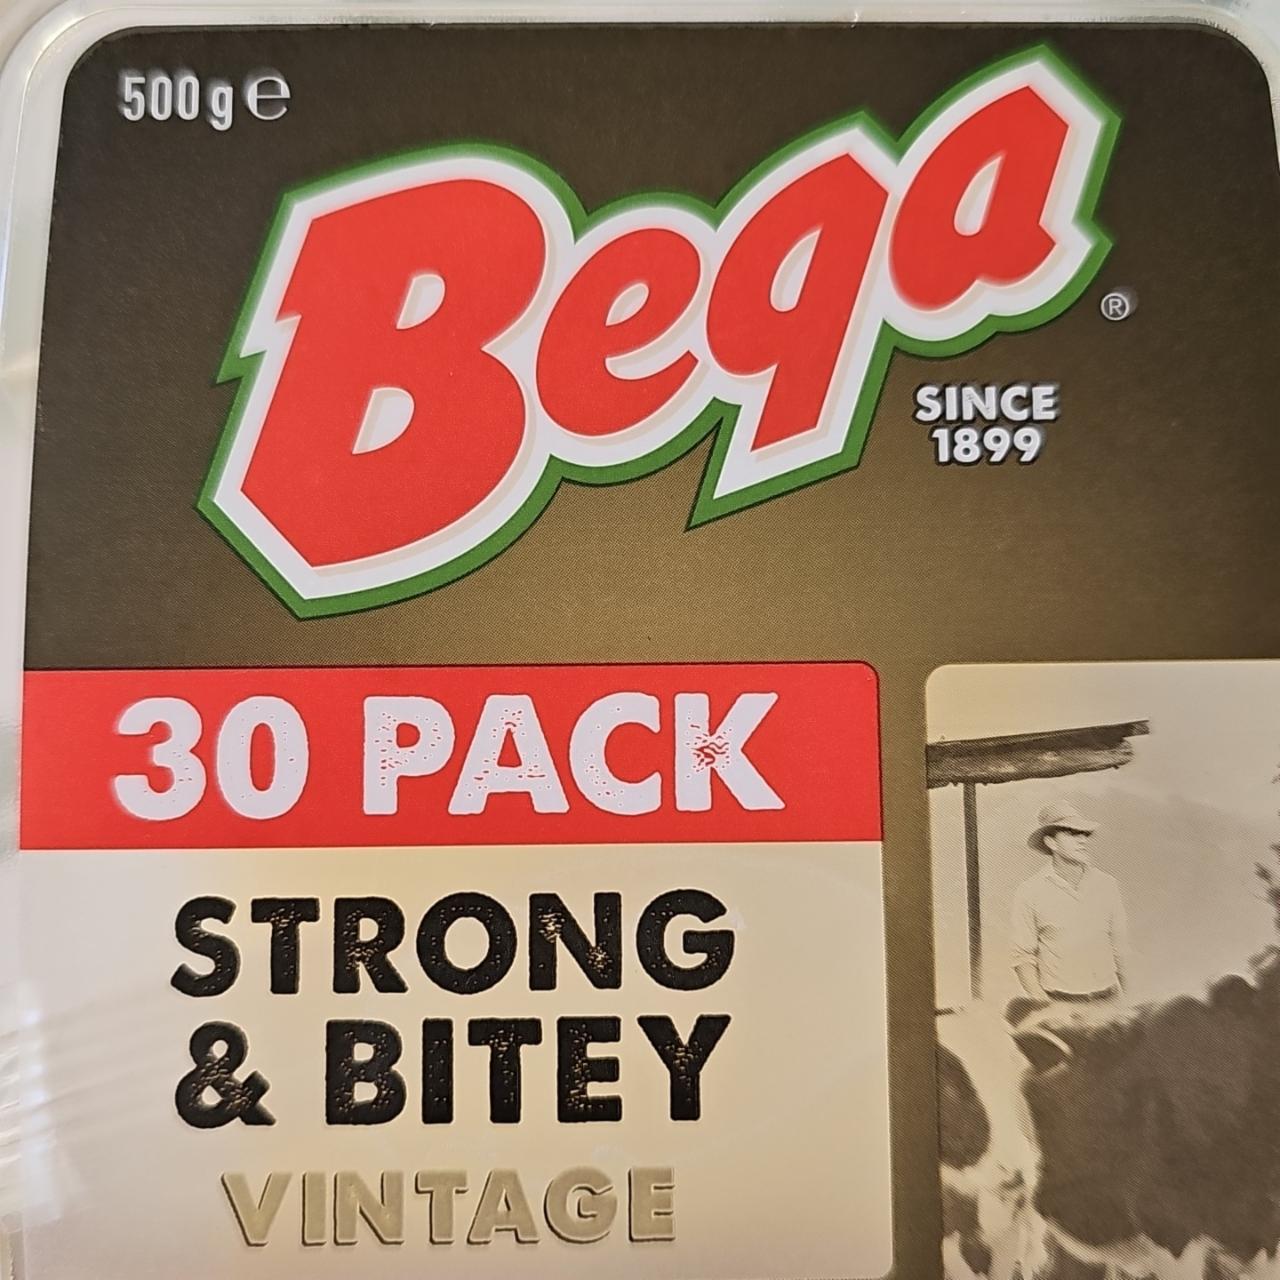 Fotografie - Strong Bitey Vintage Bega